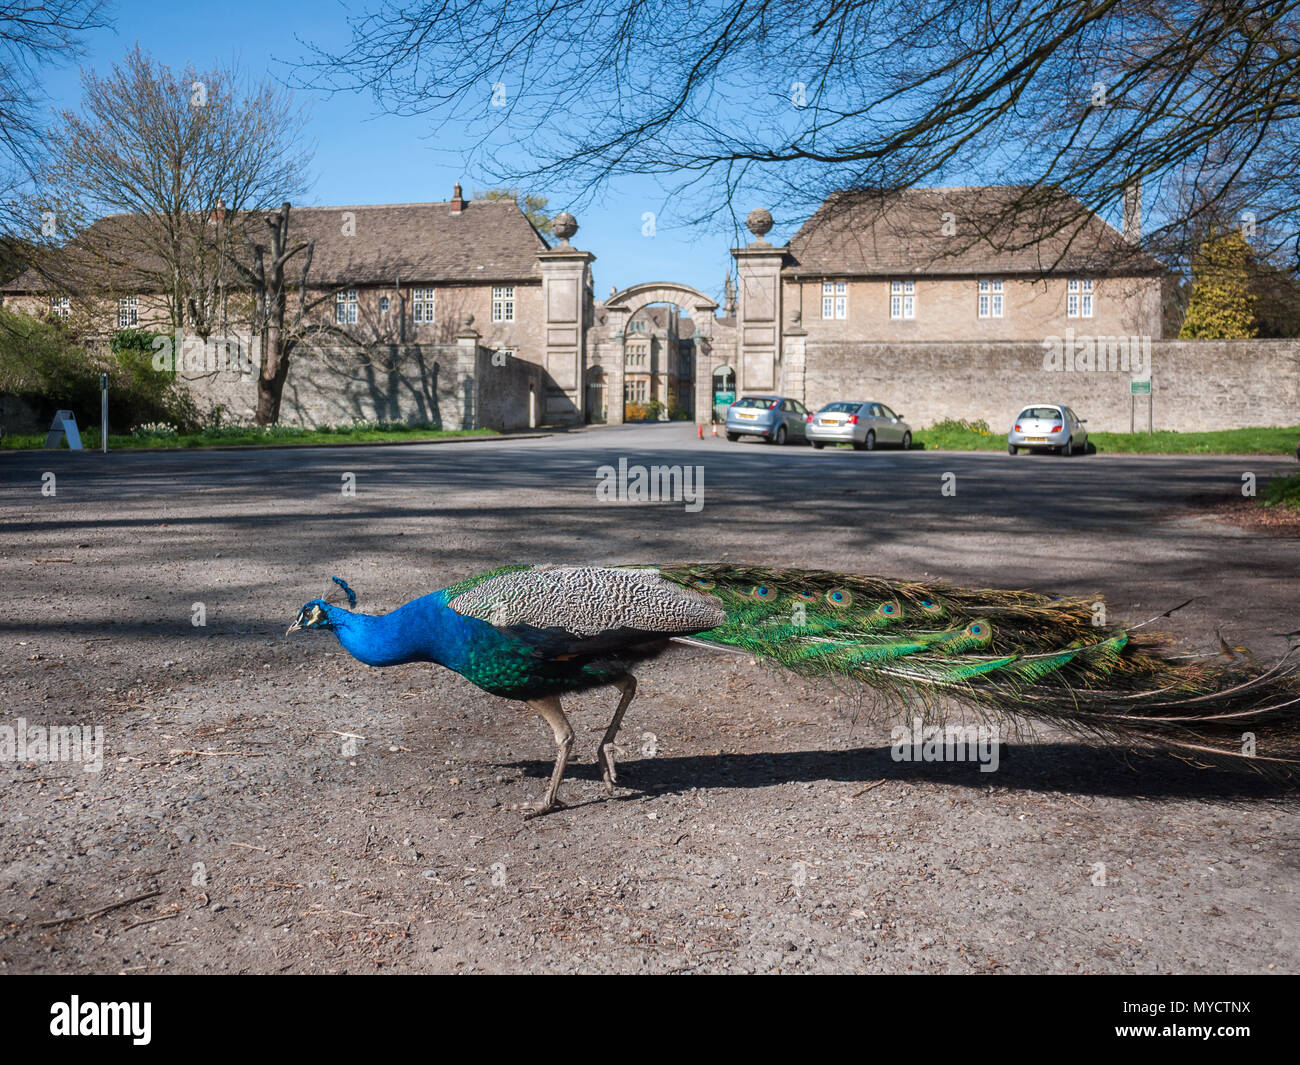 Wild peacock free roaming al parcheggio auto al di fuori del centro storico Corsham Court. Wiltshire, Regno Unito Foto Stock